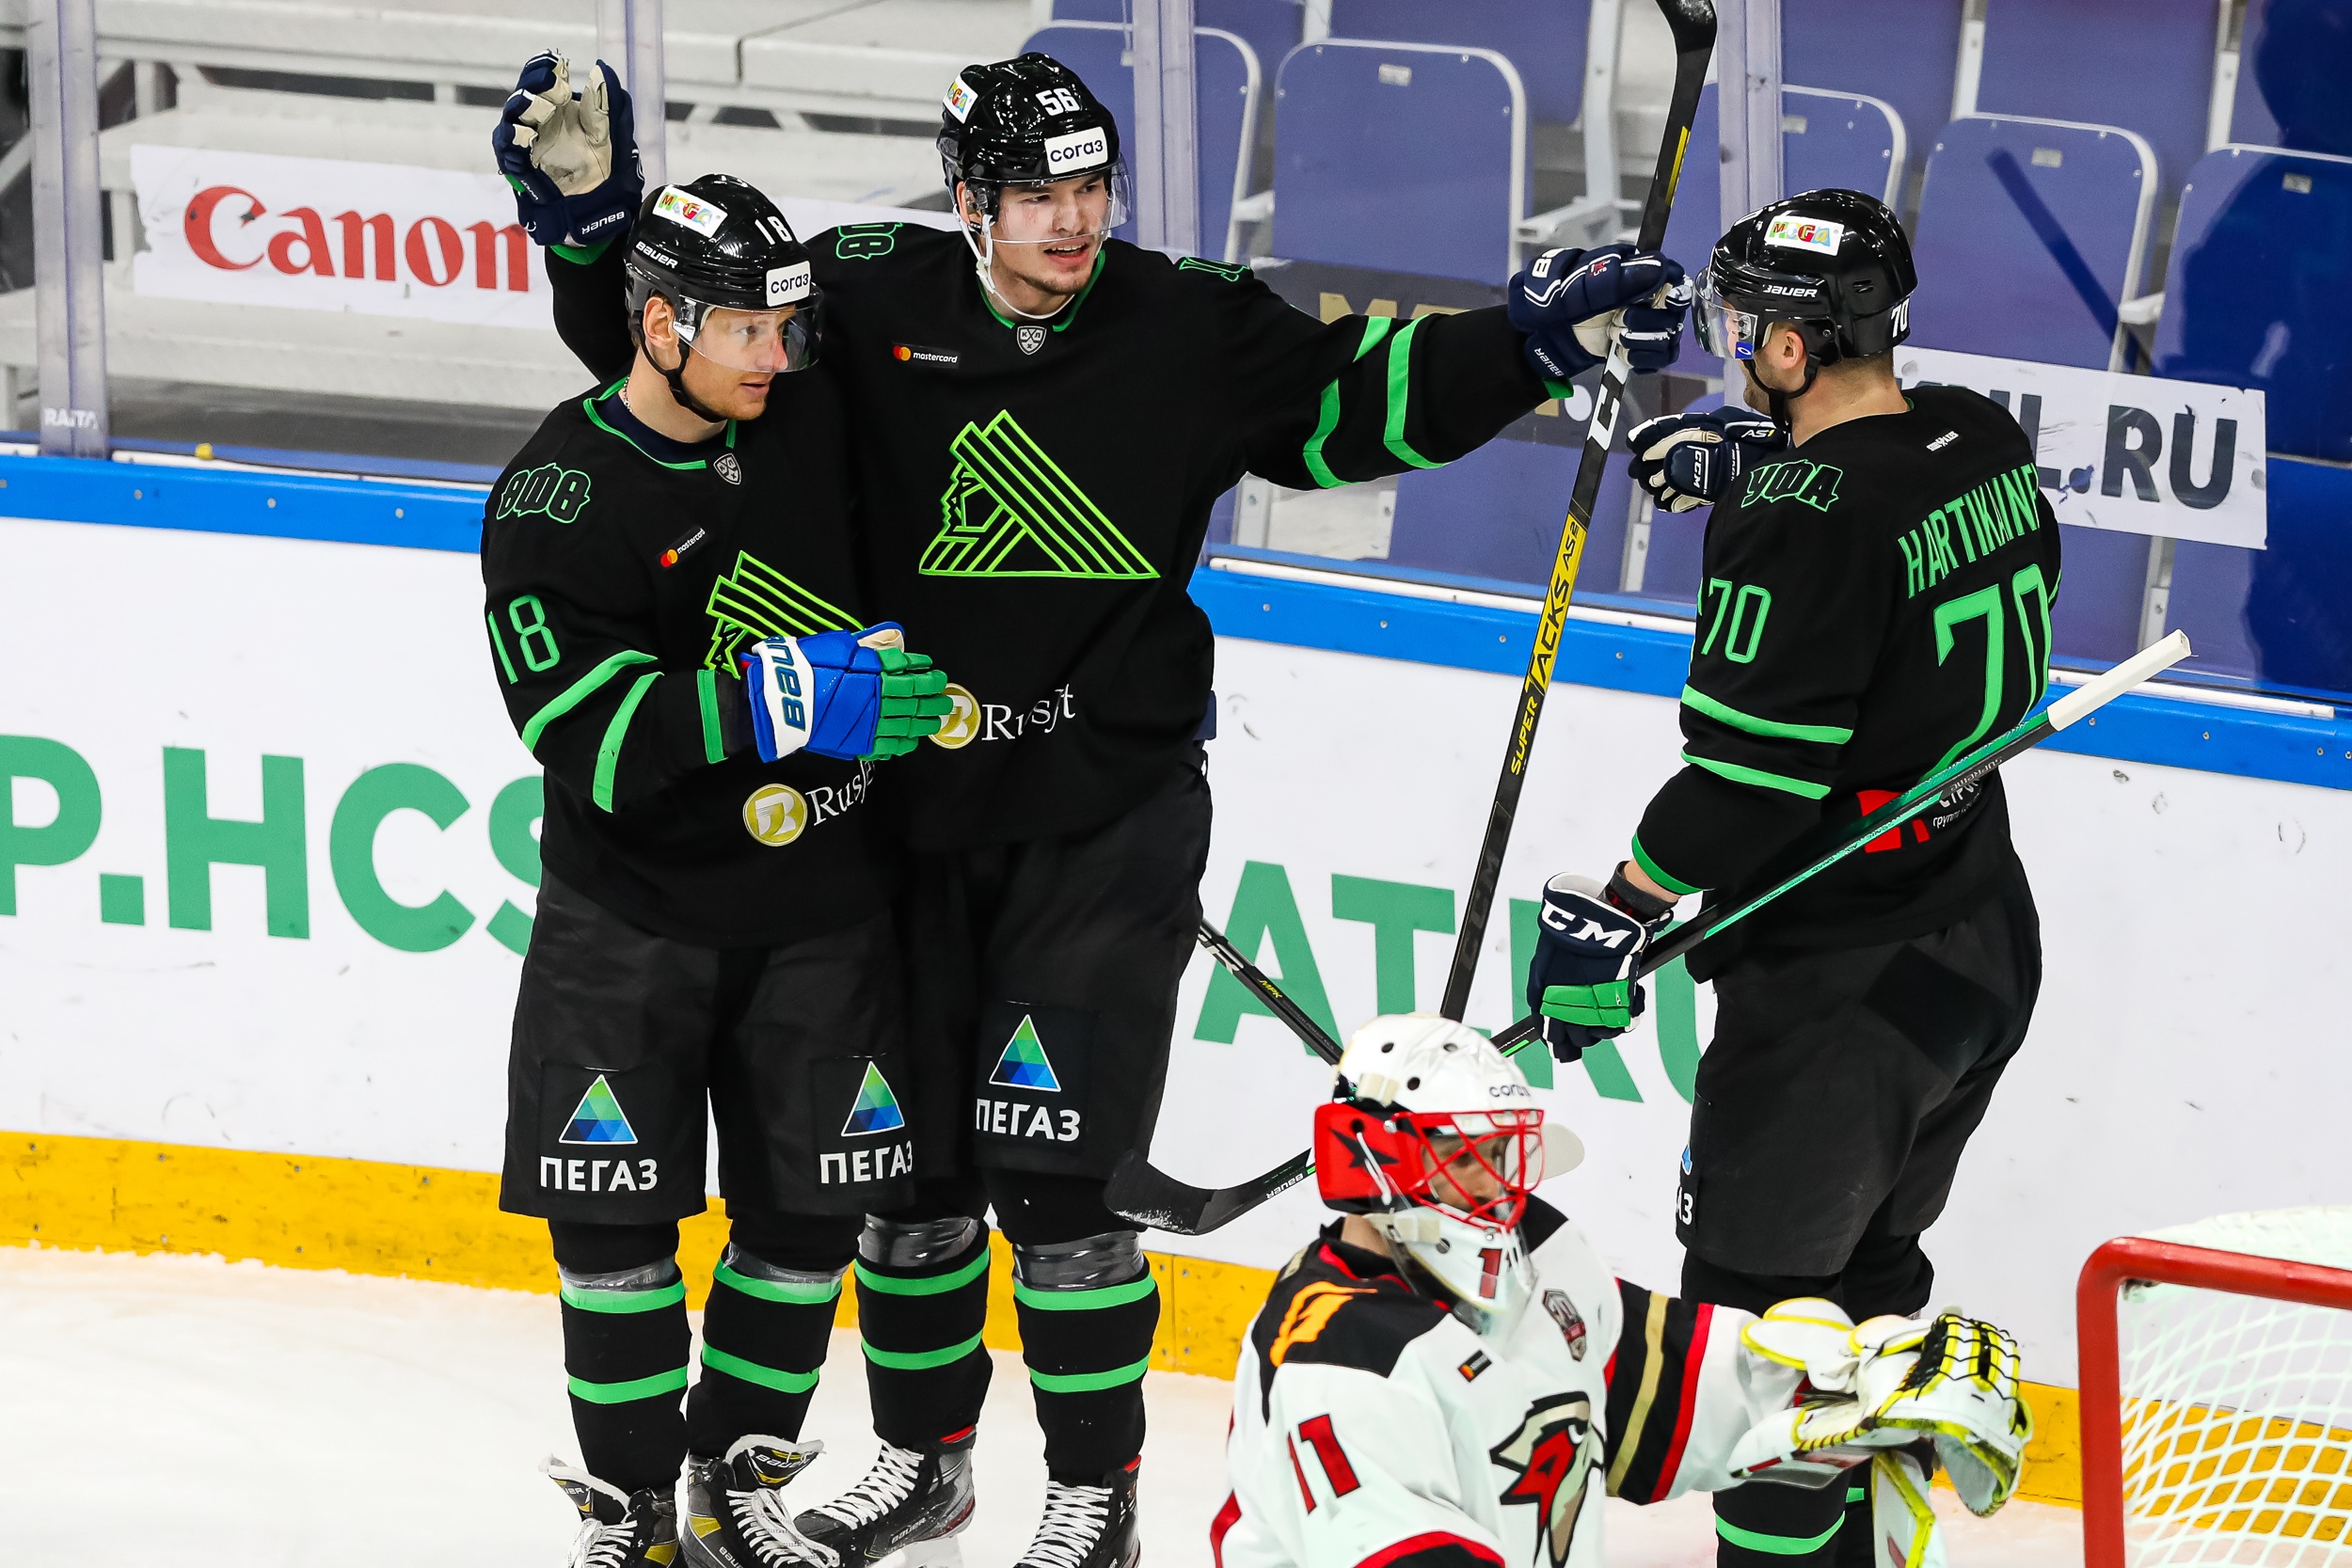 Фото хоккеистов Салават Юлаев на льду. Пресс конференция салават юлаев